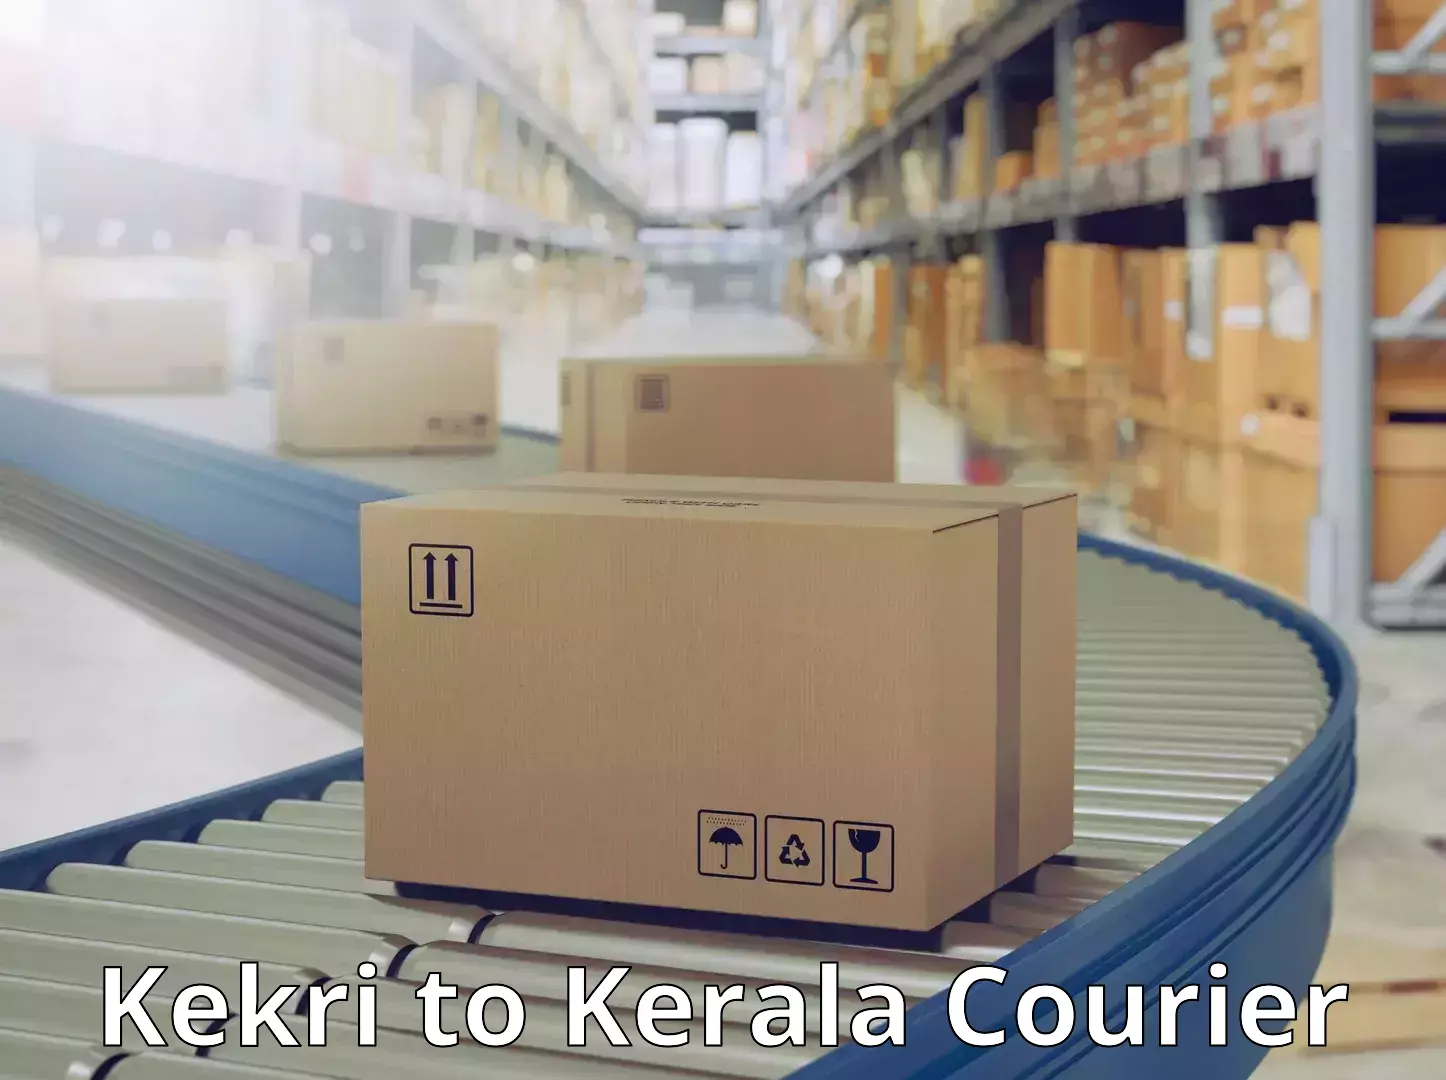 Efficient parcel service Kekri to Chengannur